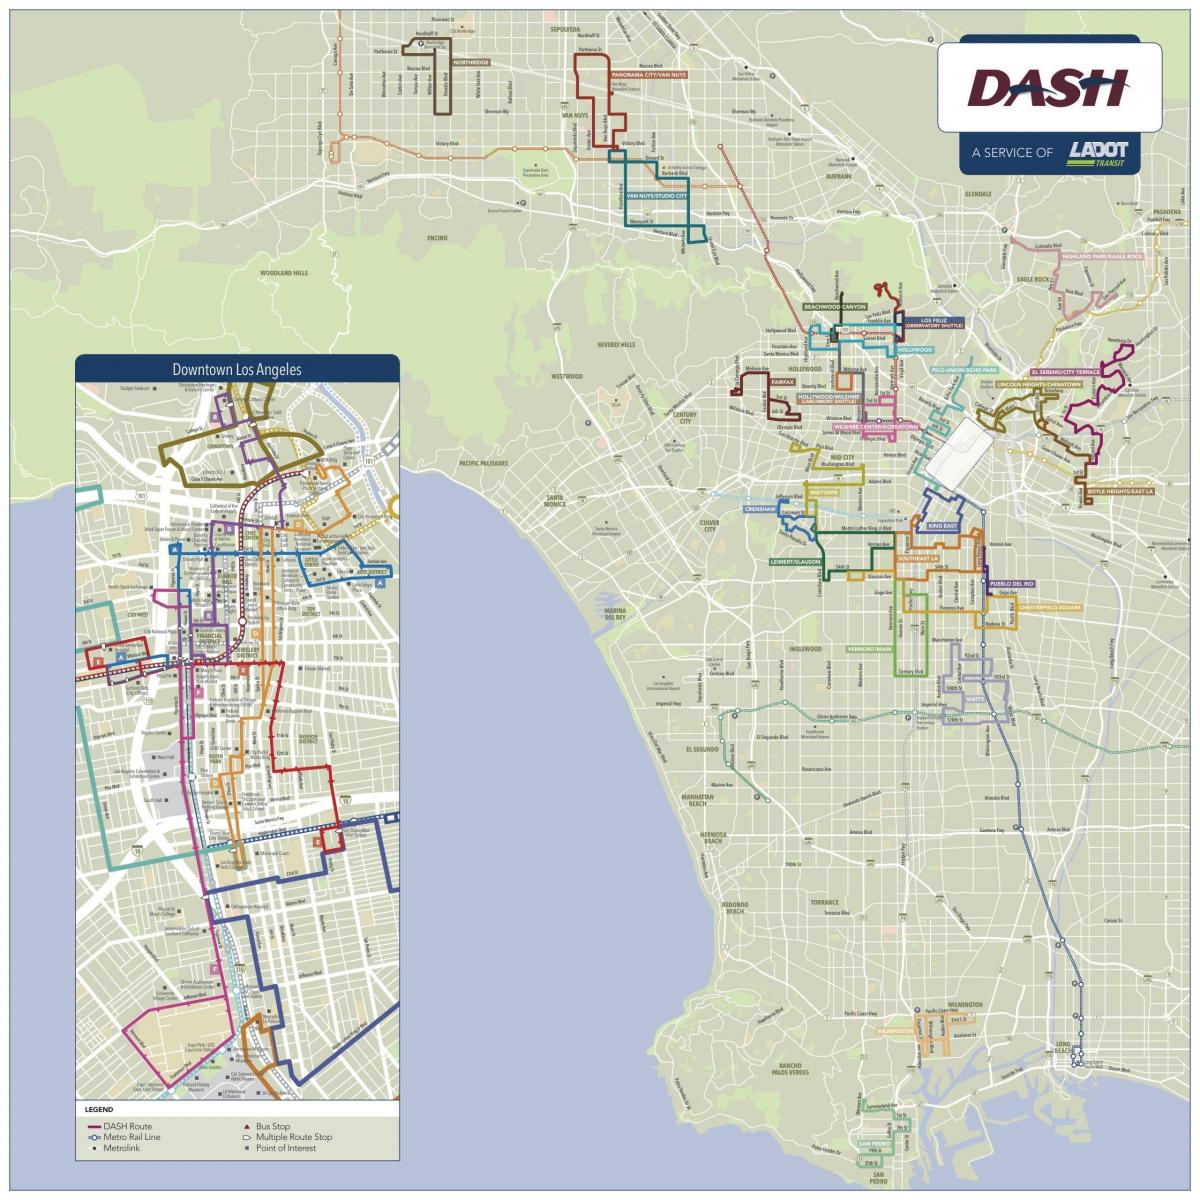 Los Angeles dash map